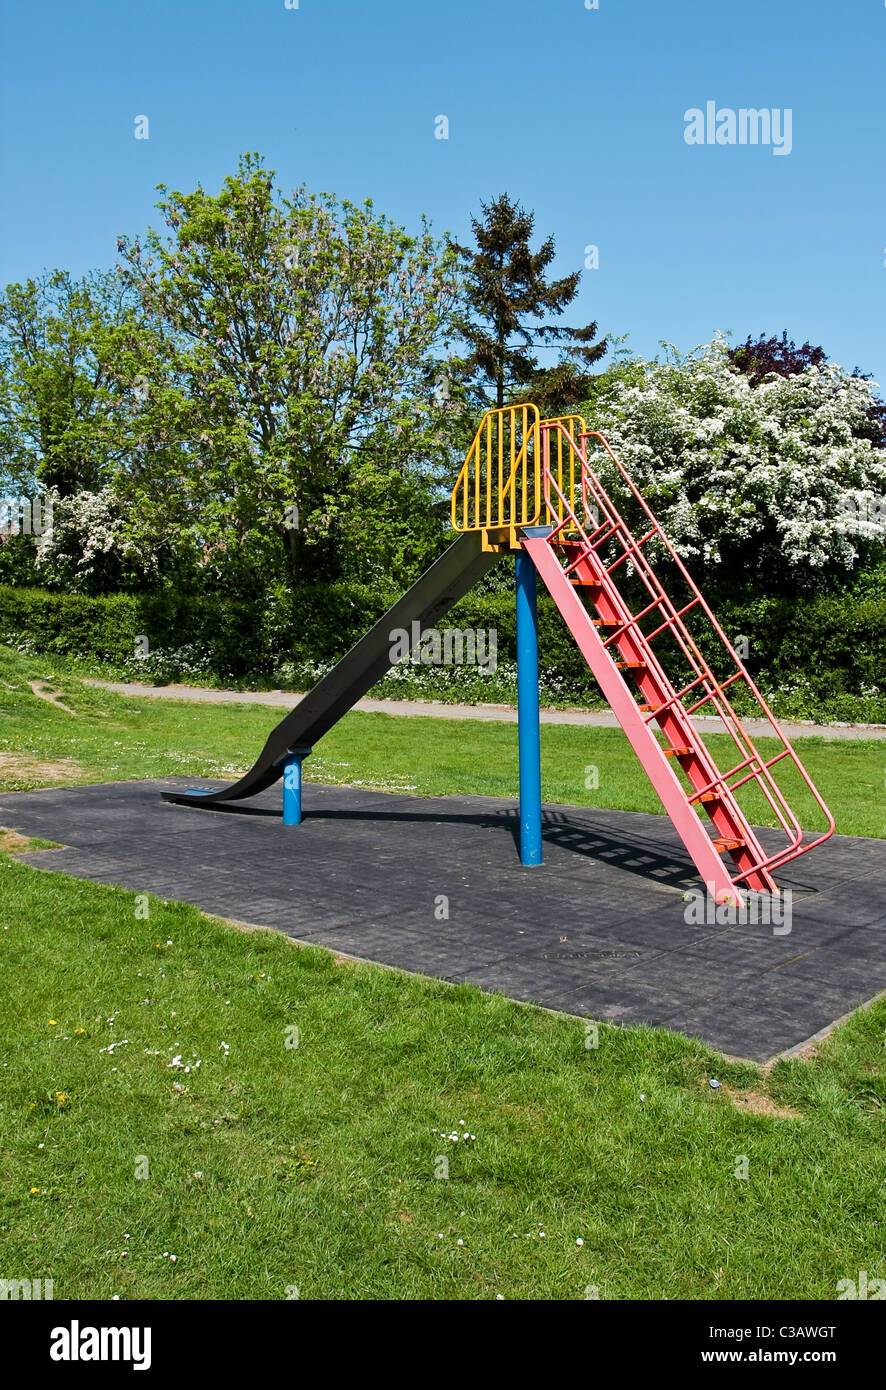 Slide in a playground in Doddinghurst, Essex Stock Photo